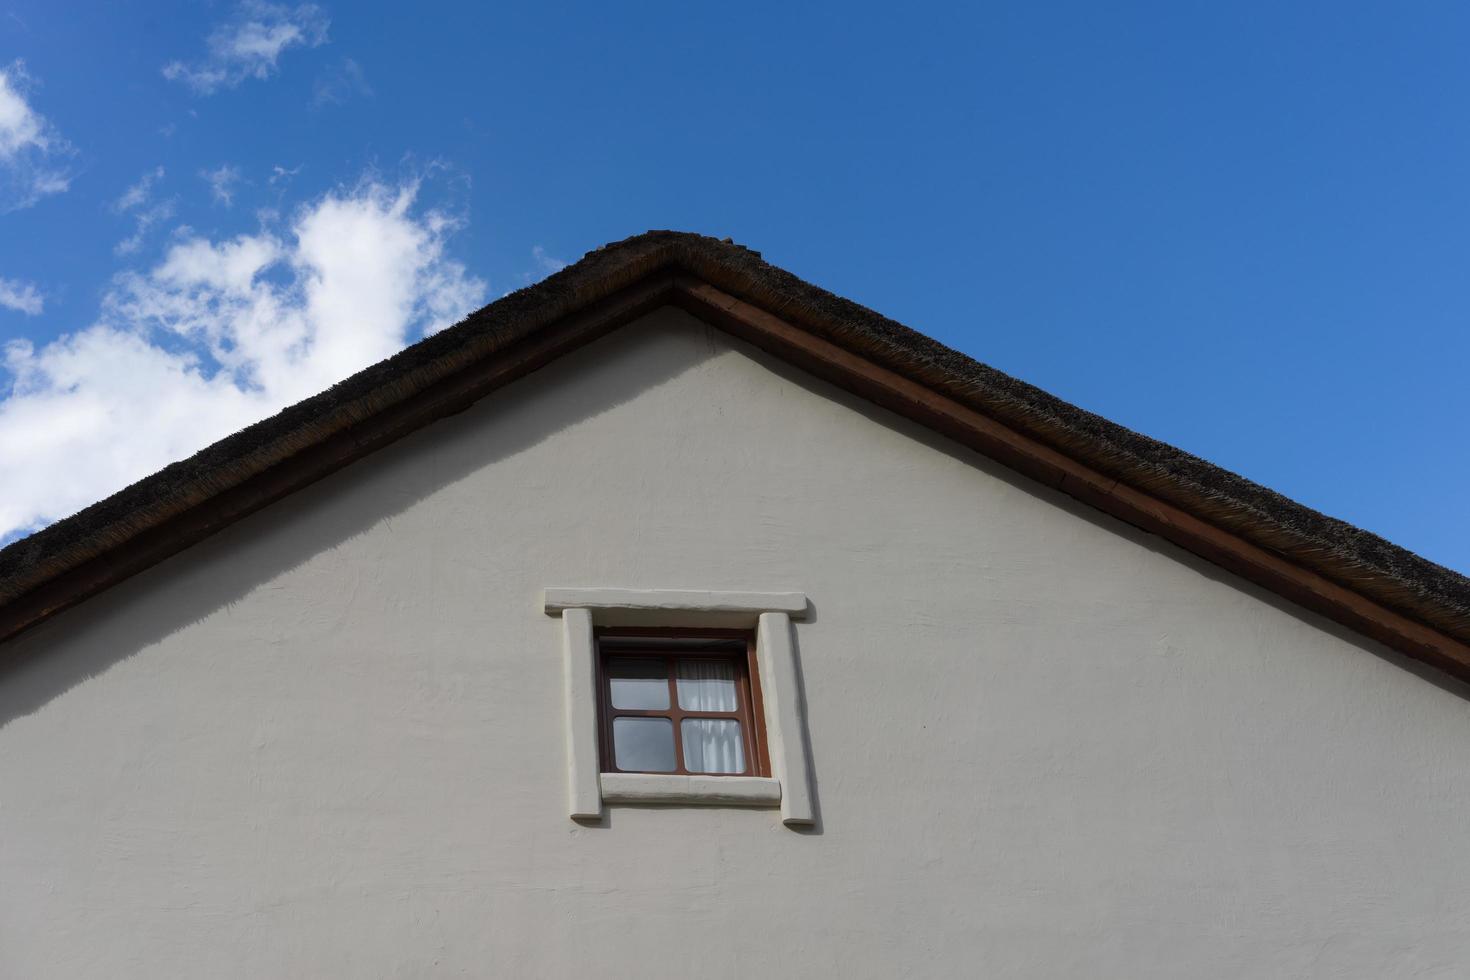 del av ett halmtak i ett byhus med en molnig blå himmel foto